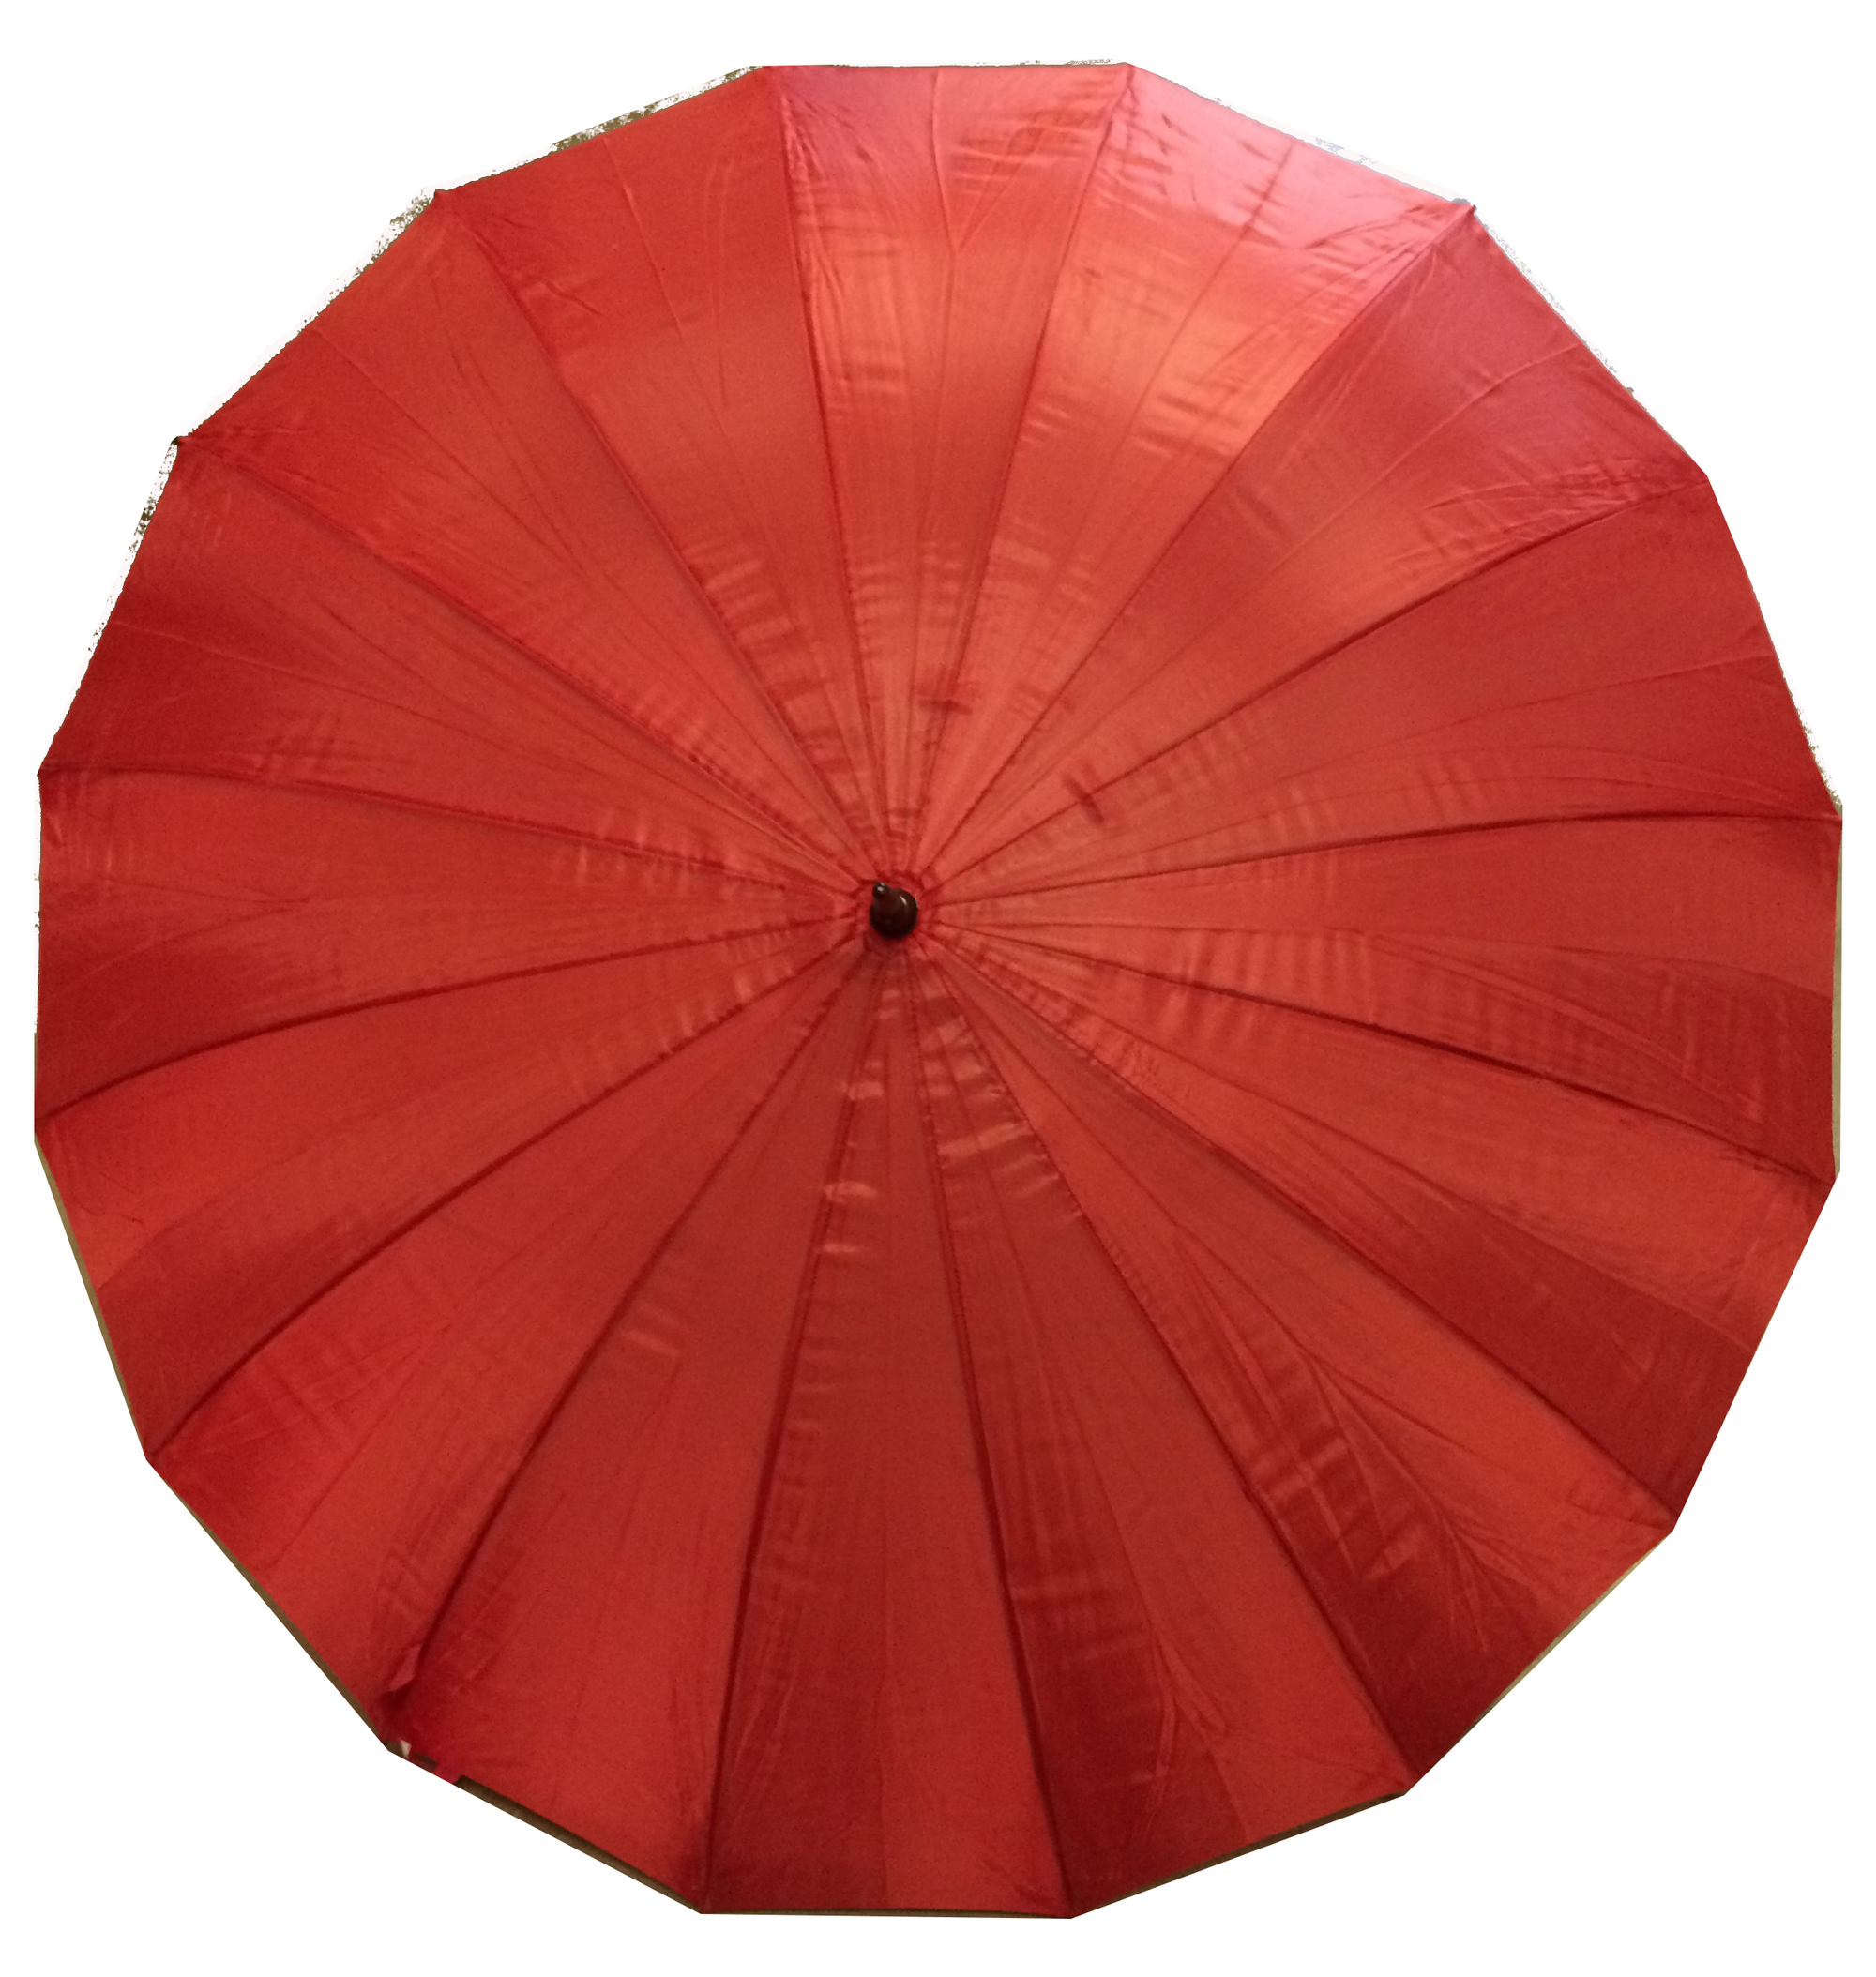 Umbrella rental - red